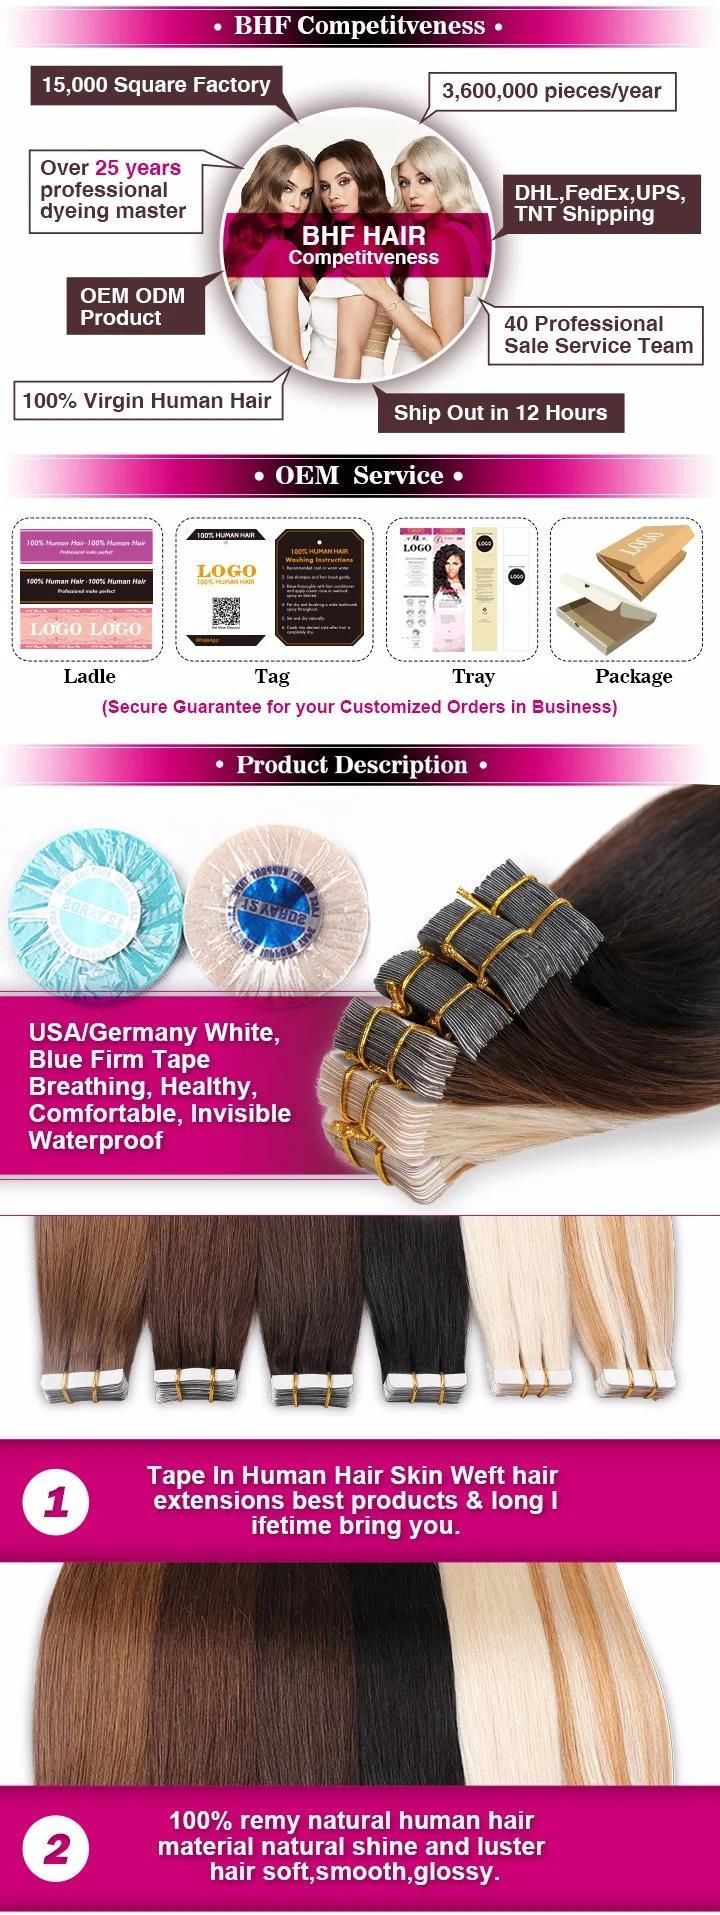 "Lace Wig Brazilian Hair, 100% Brazilian Virgin Human Hair, Cheap Brazilian Human Hair "